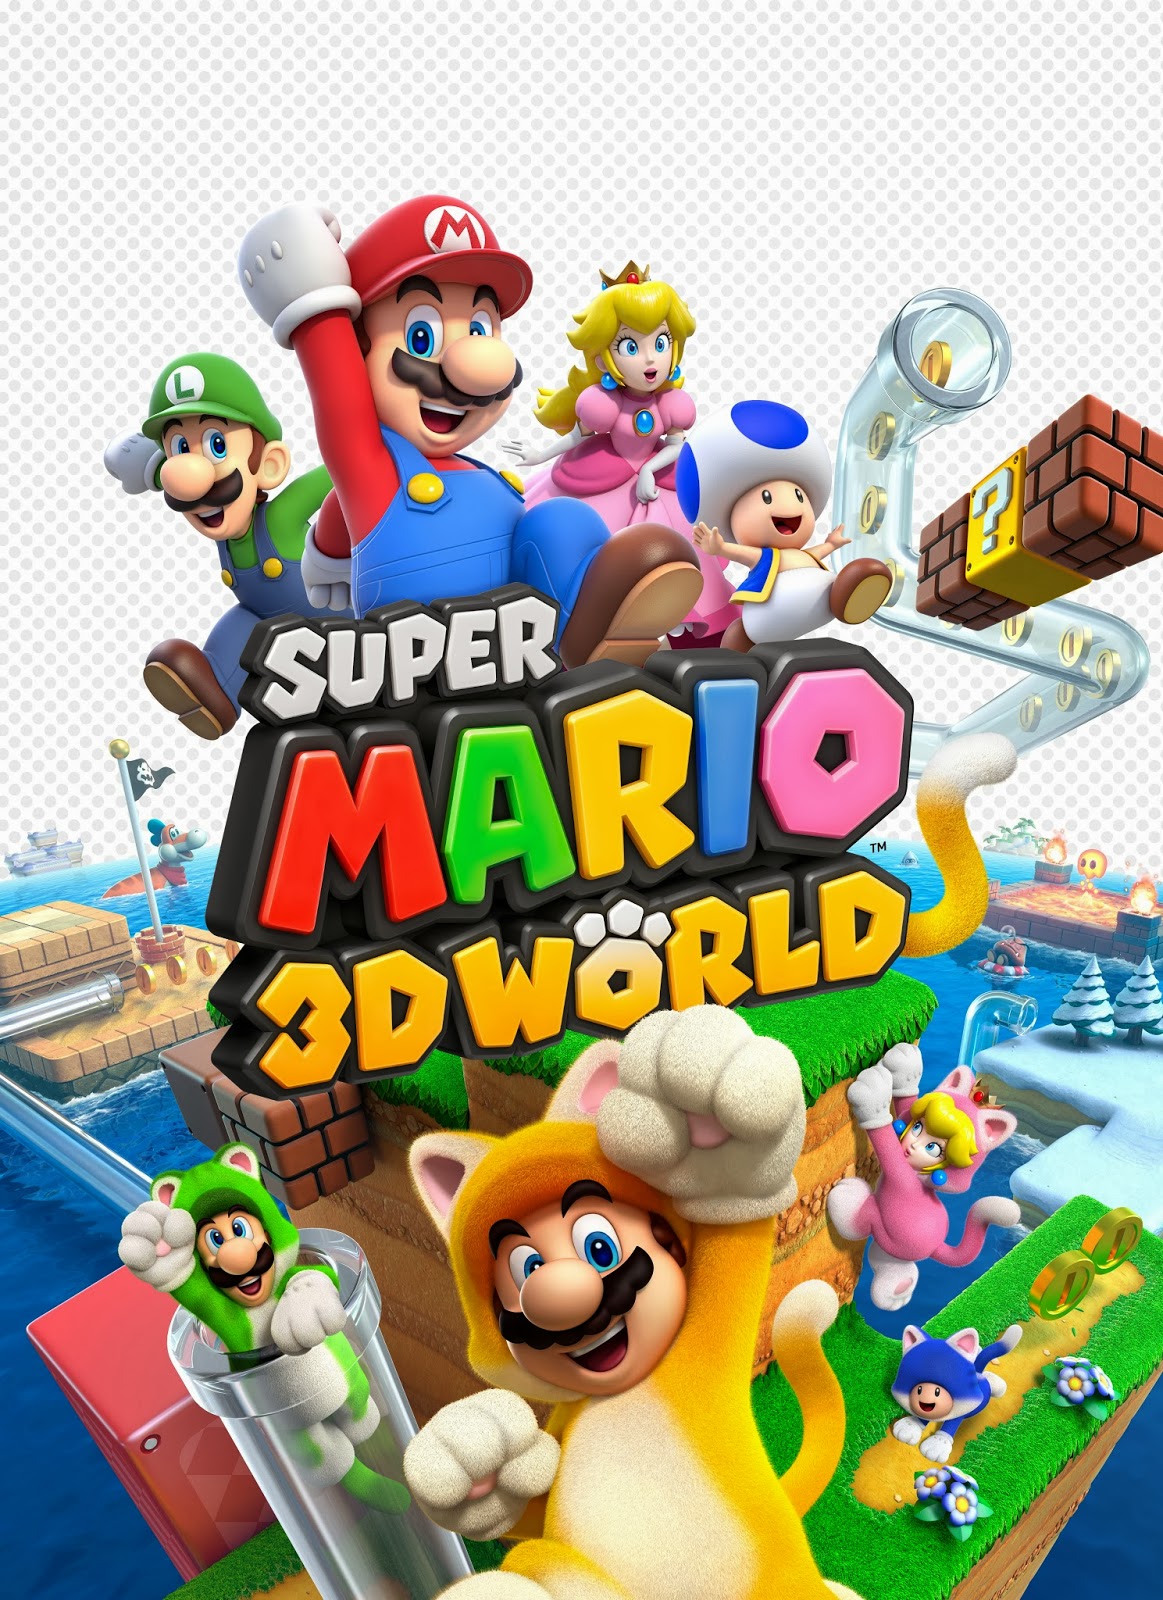 super mario 3d world levels